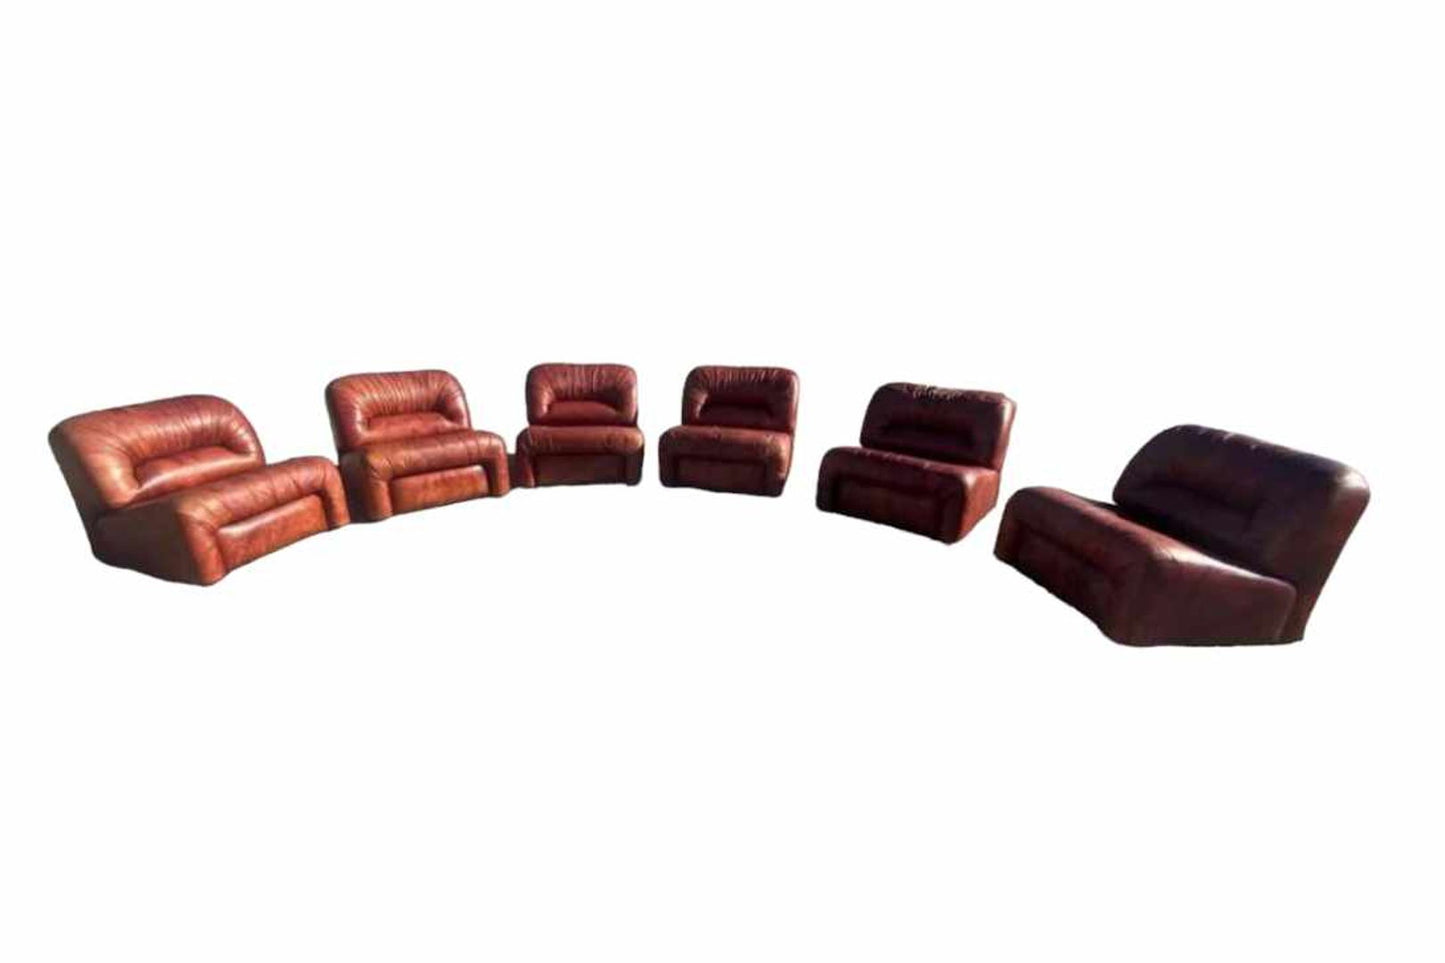 Six-pieces Modular Sofa Set by Lev & Lev